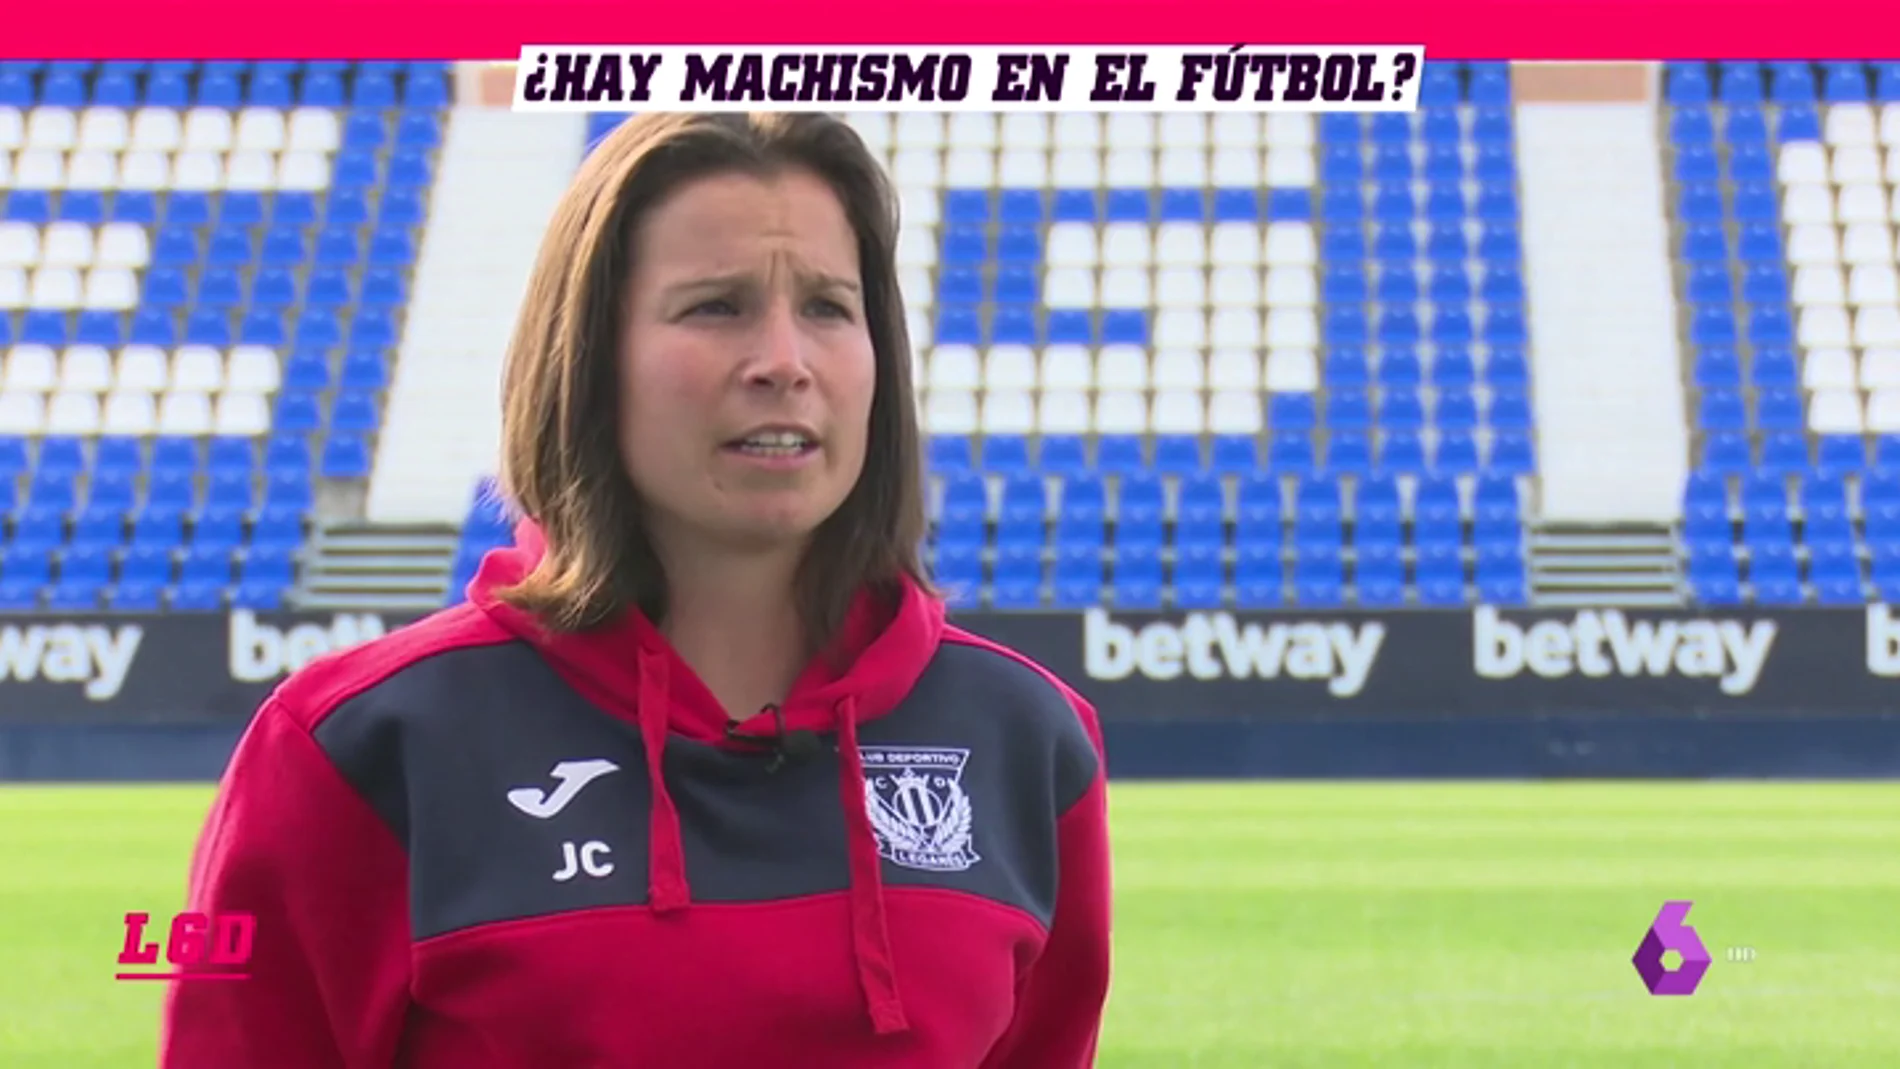 Jara Cuenca, utillera y entrenadora del Infantil B del Leganés: "Por suerte no he tenido que vivir insultos machistas"